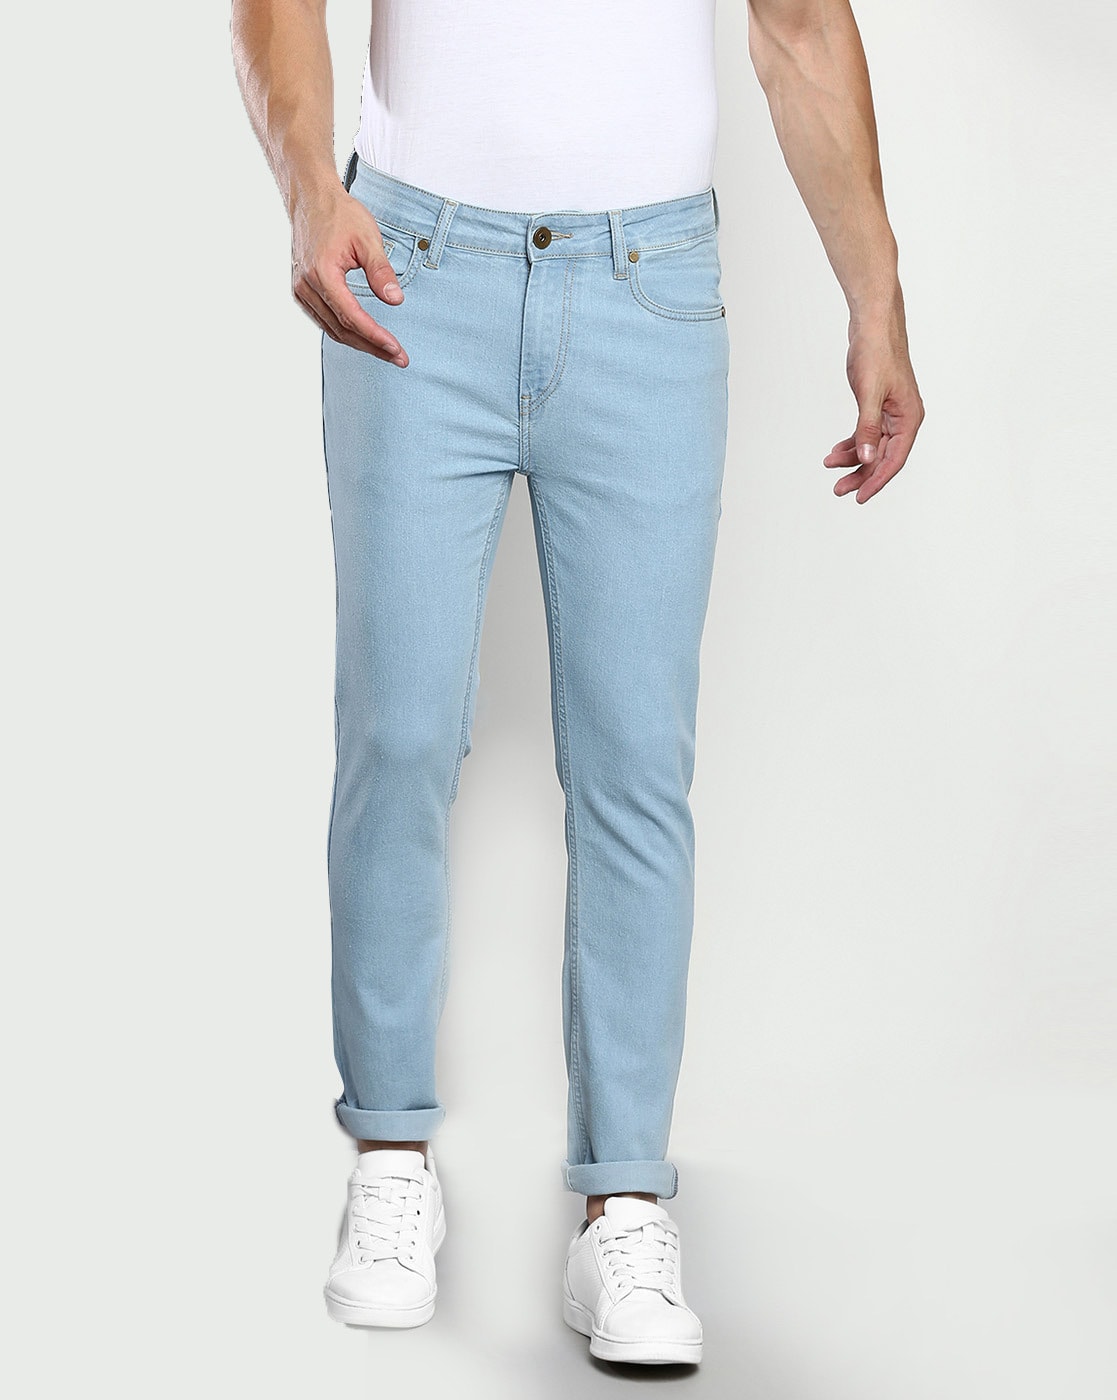 Buy Light Blue Jeans for Men by DENNISLINGO PREMIUM ATTIRE Online | Ajio.com